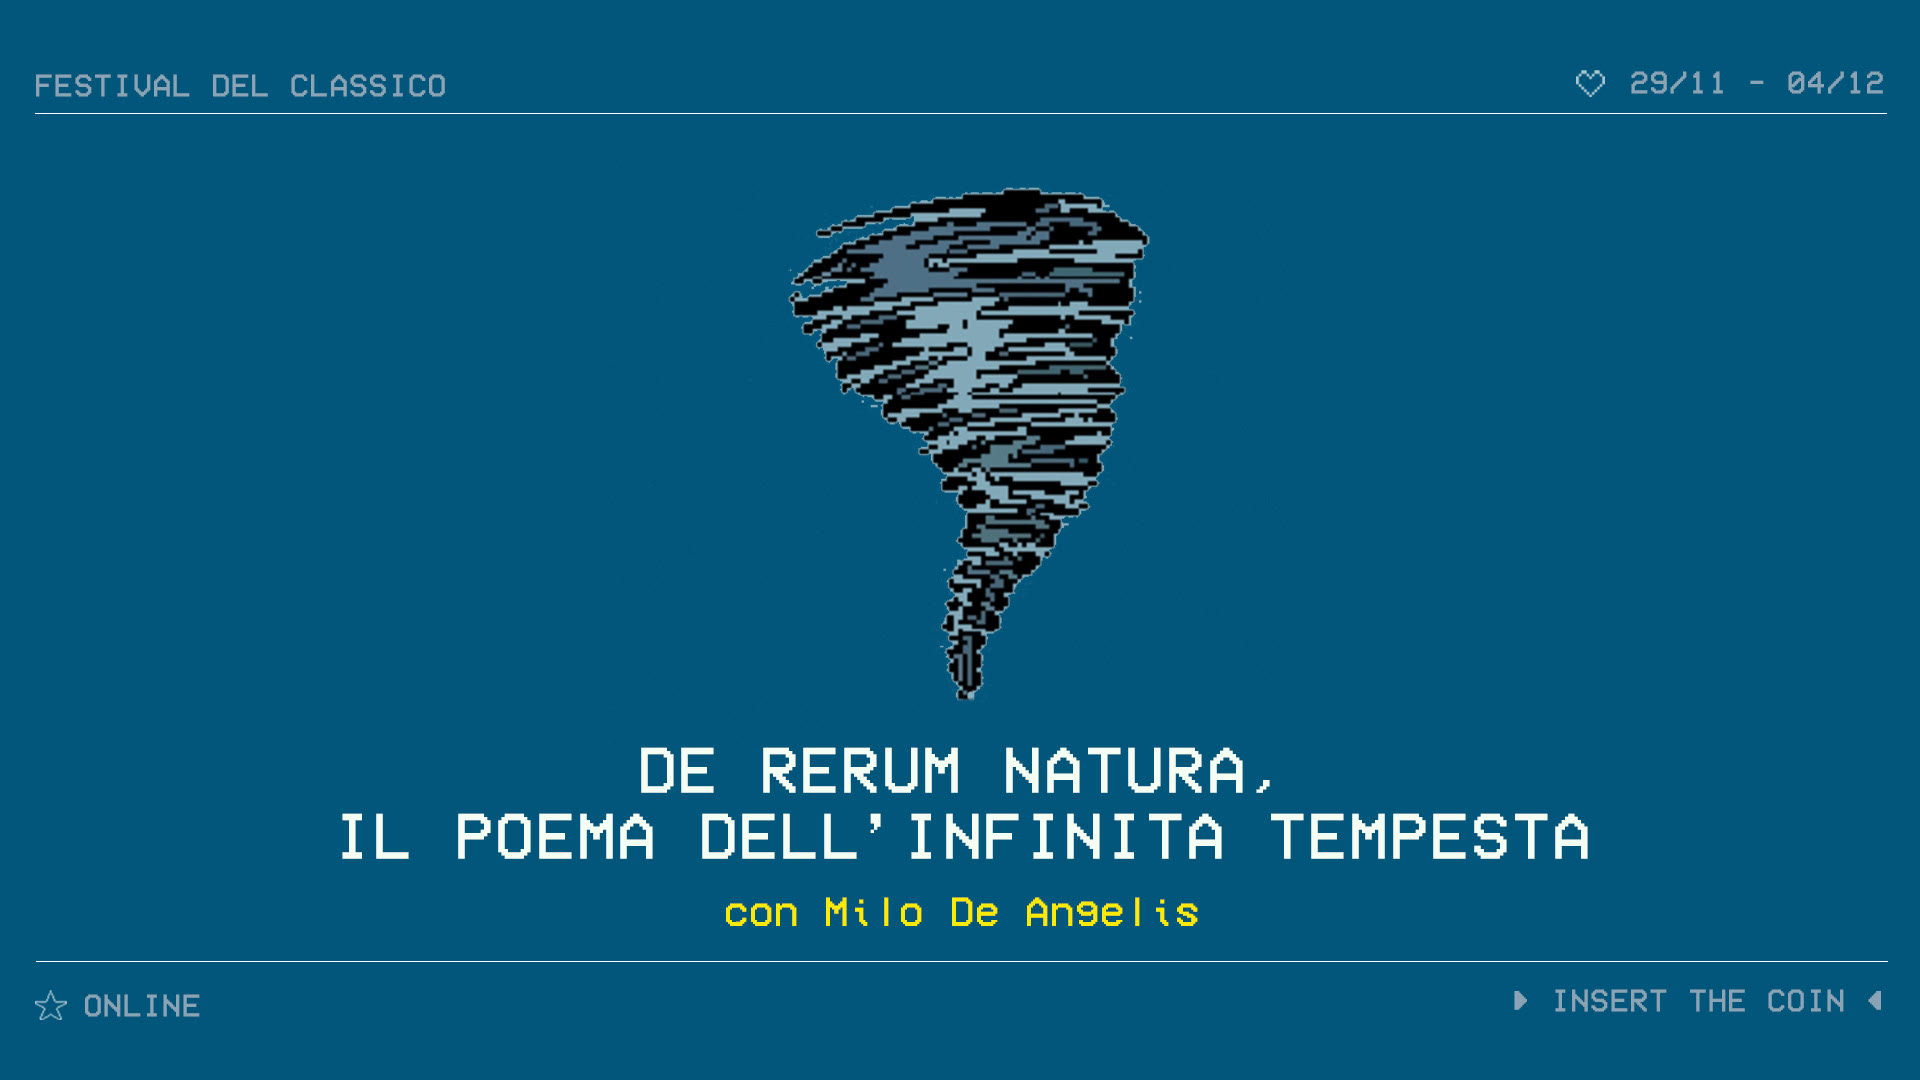 De rerum natura, il poema dell'infinita tempesta | Festival del classico